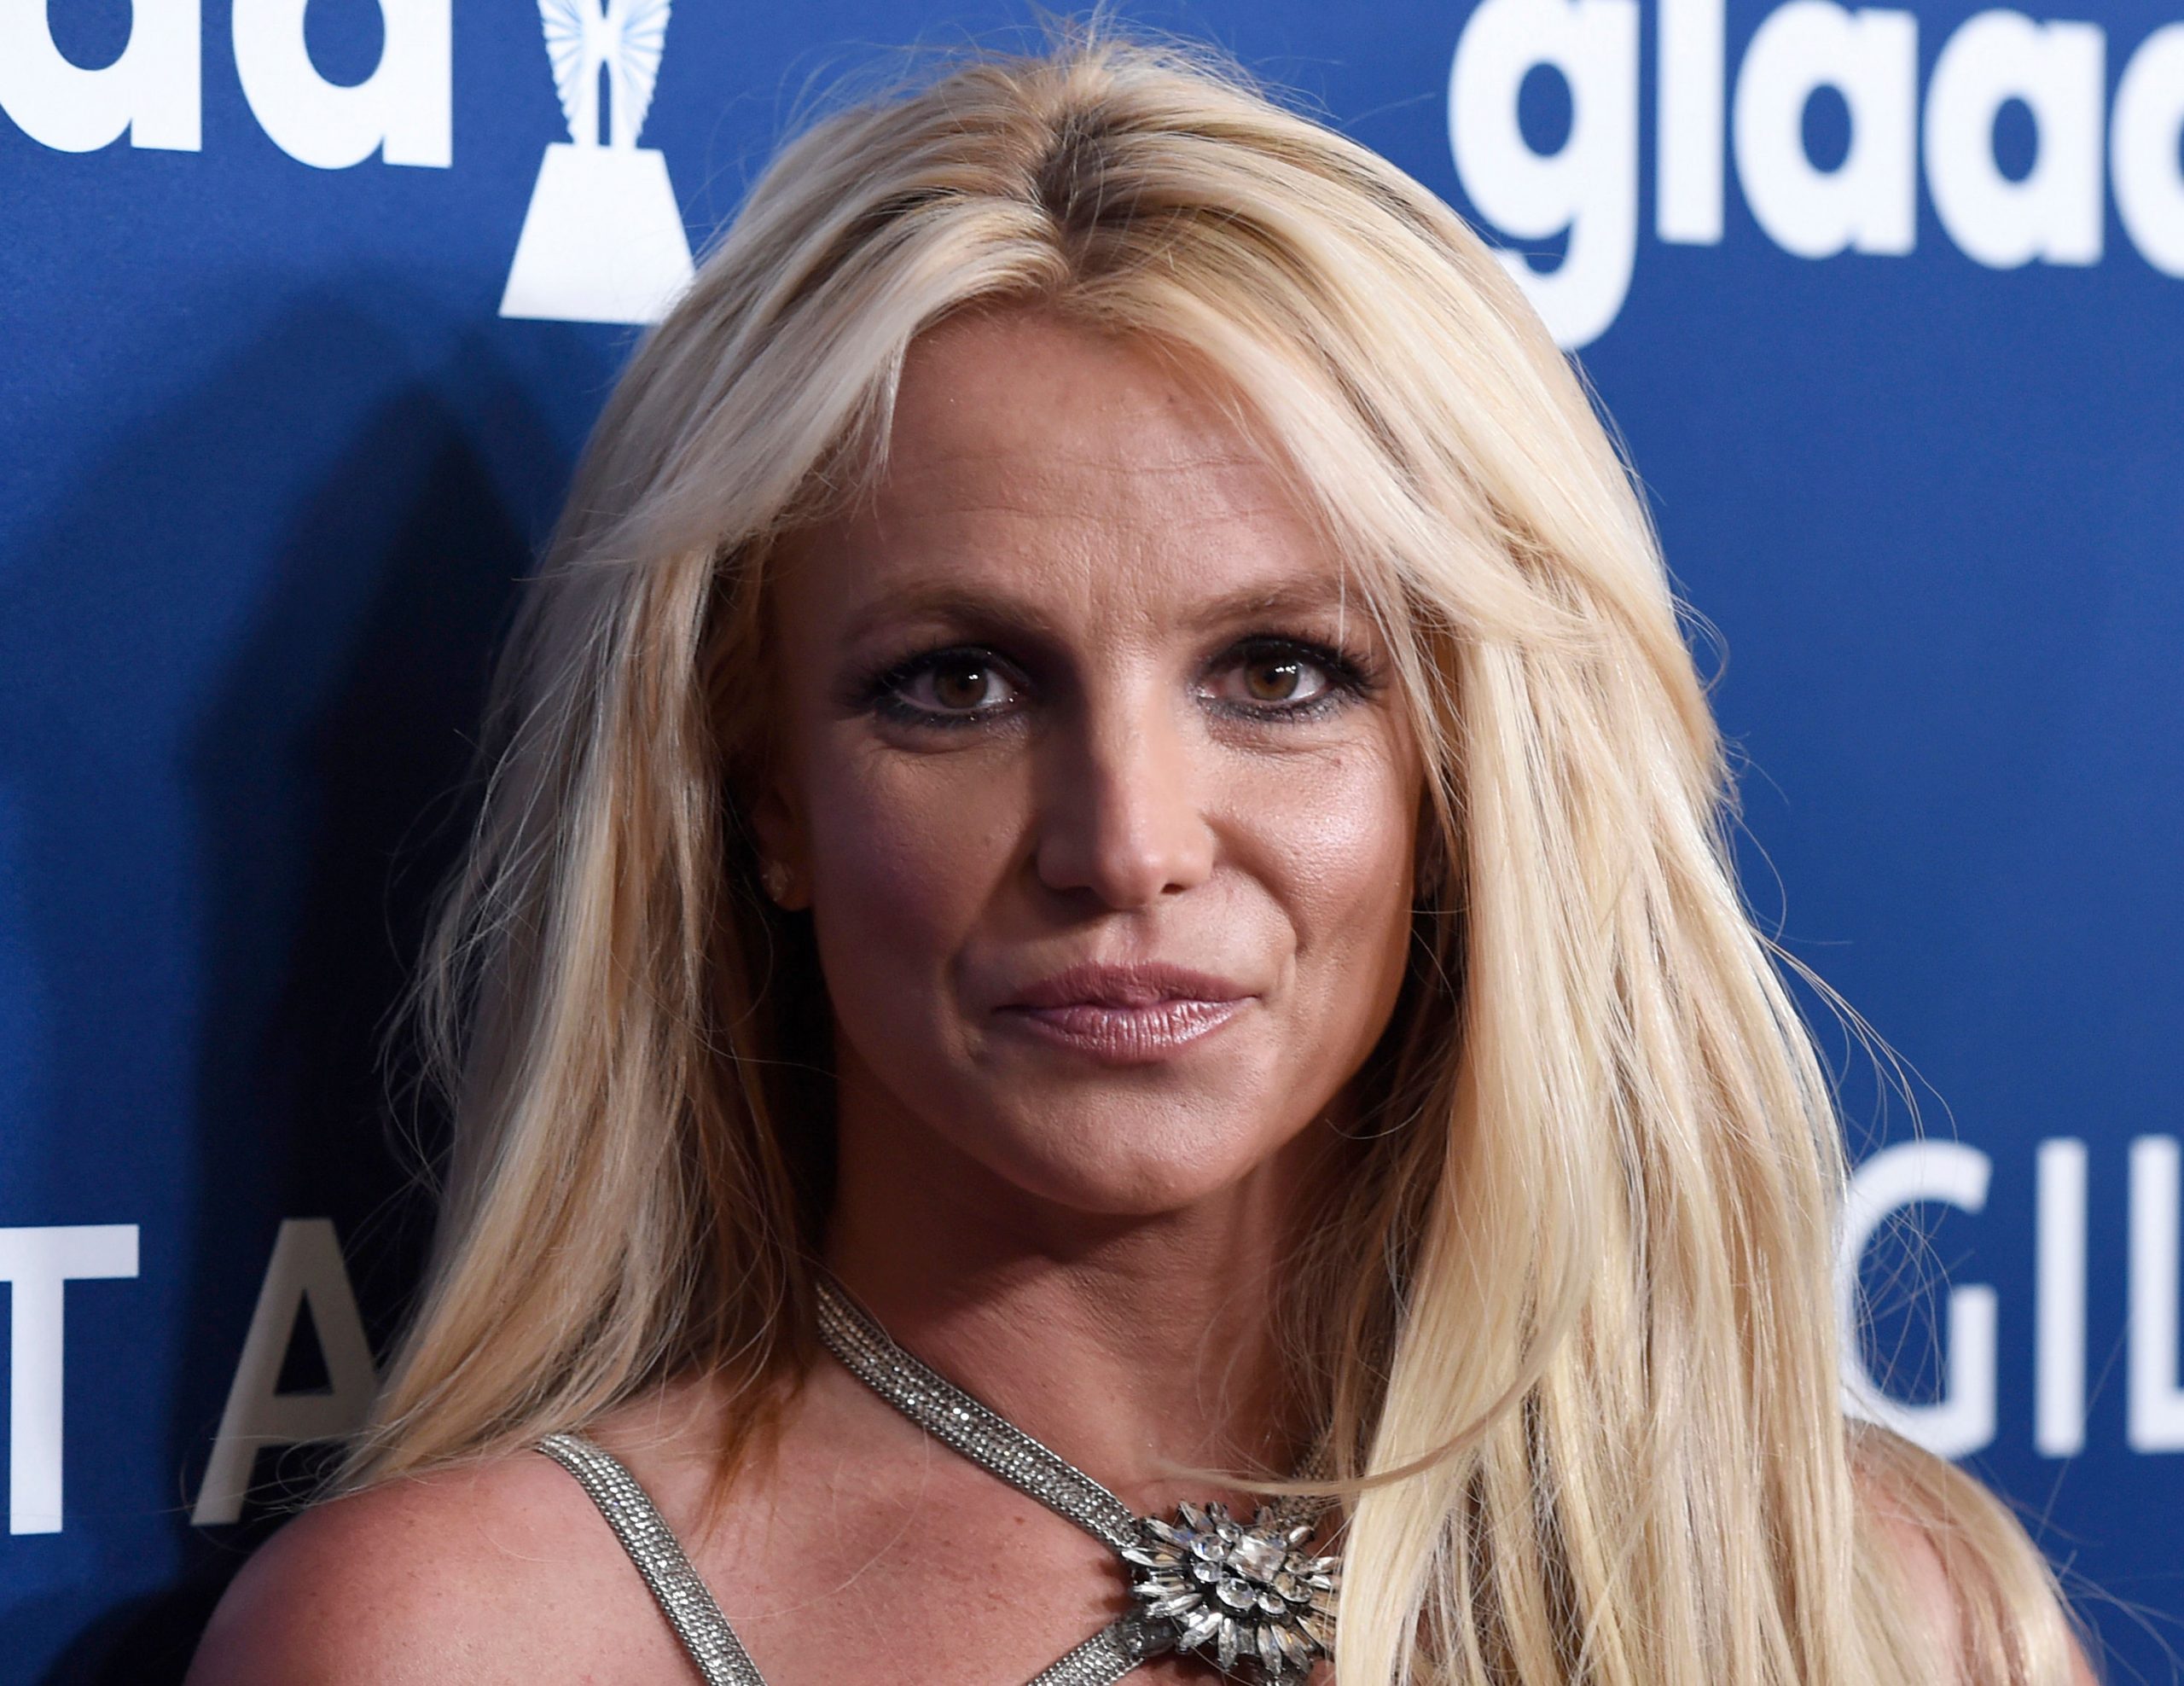 Britney Spears’ ex-husband Jason Alexander attempts to crash her wedding